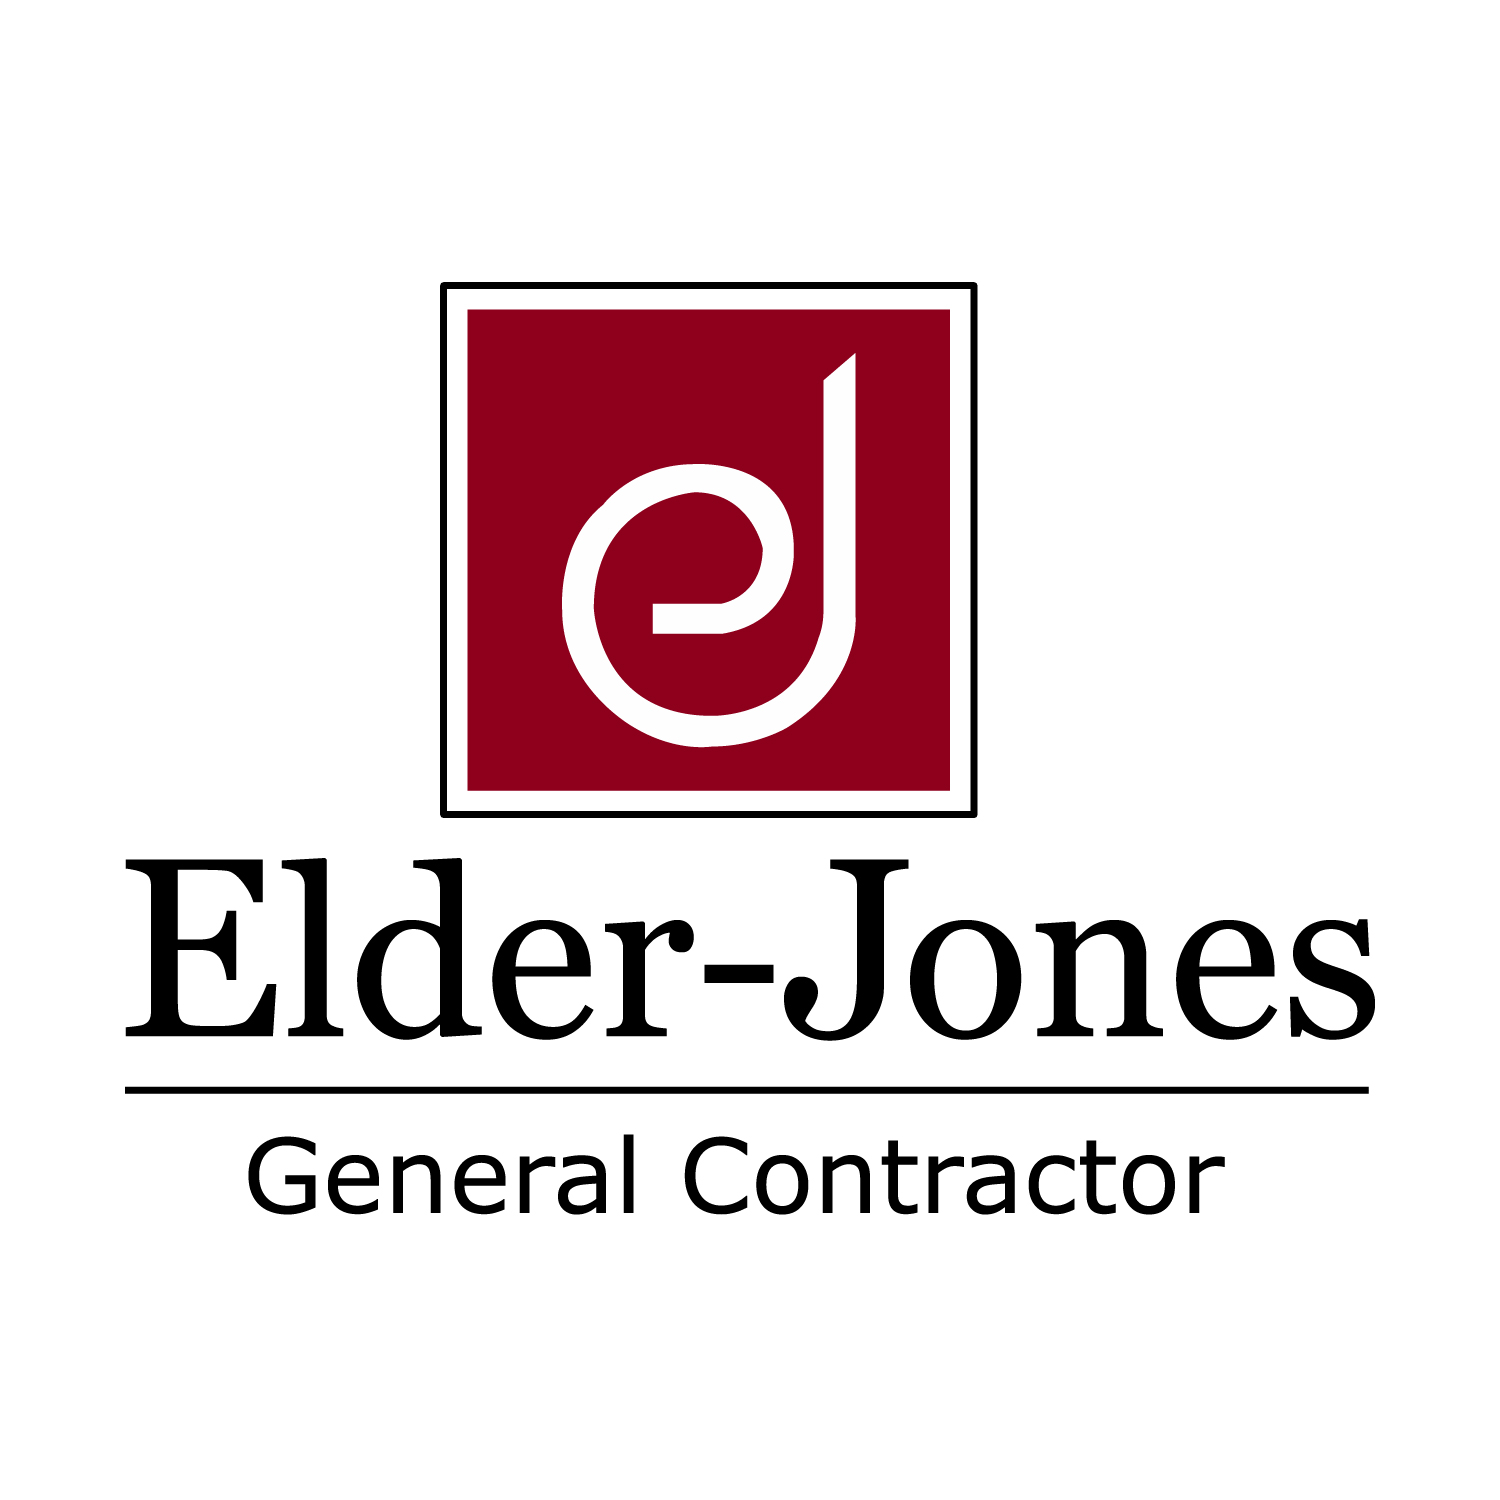 Elder Jones